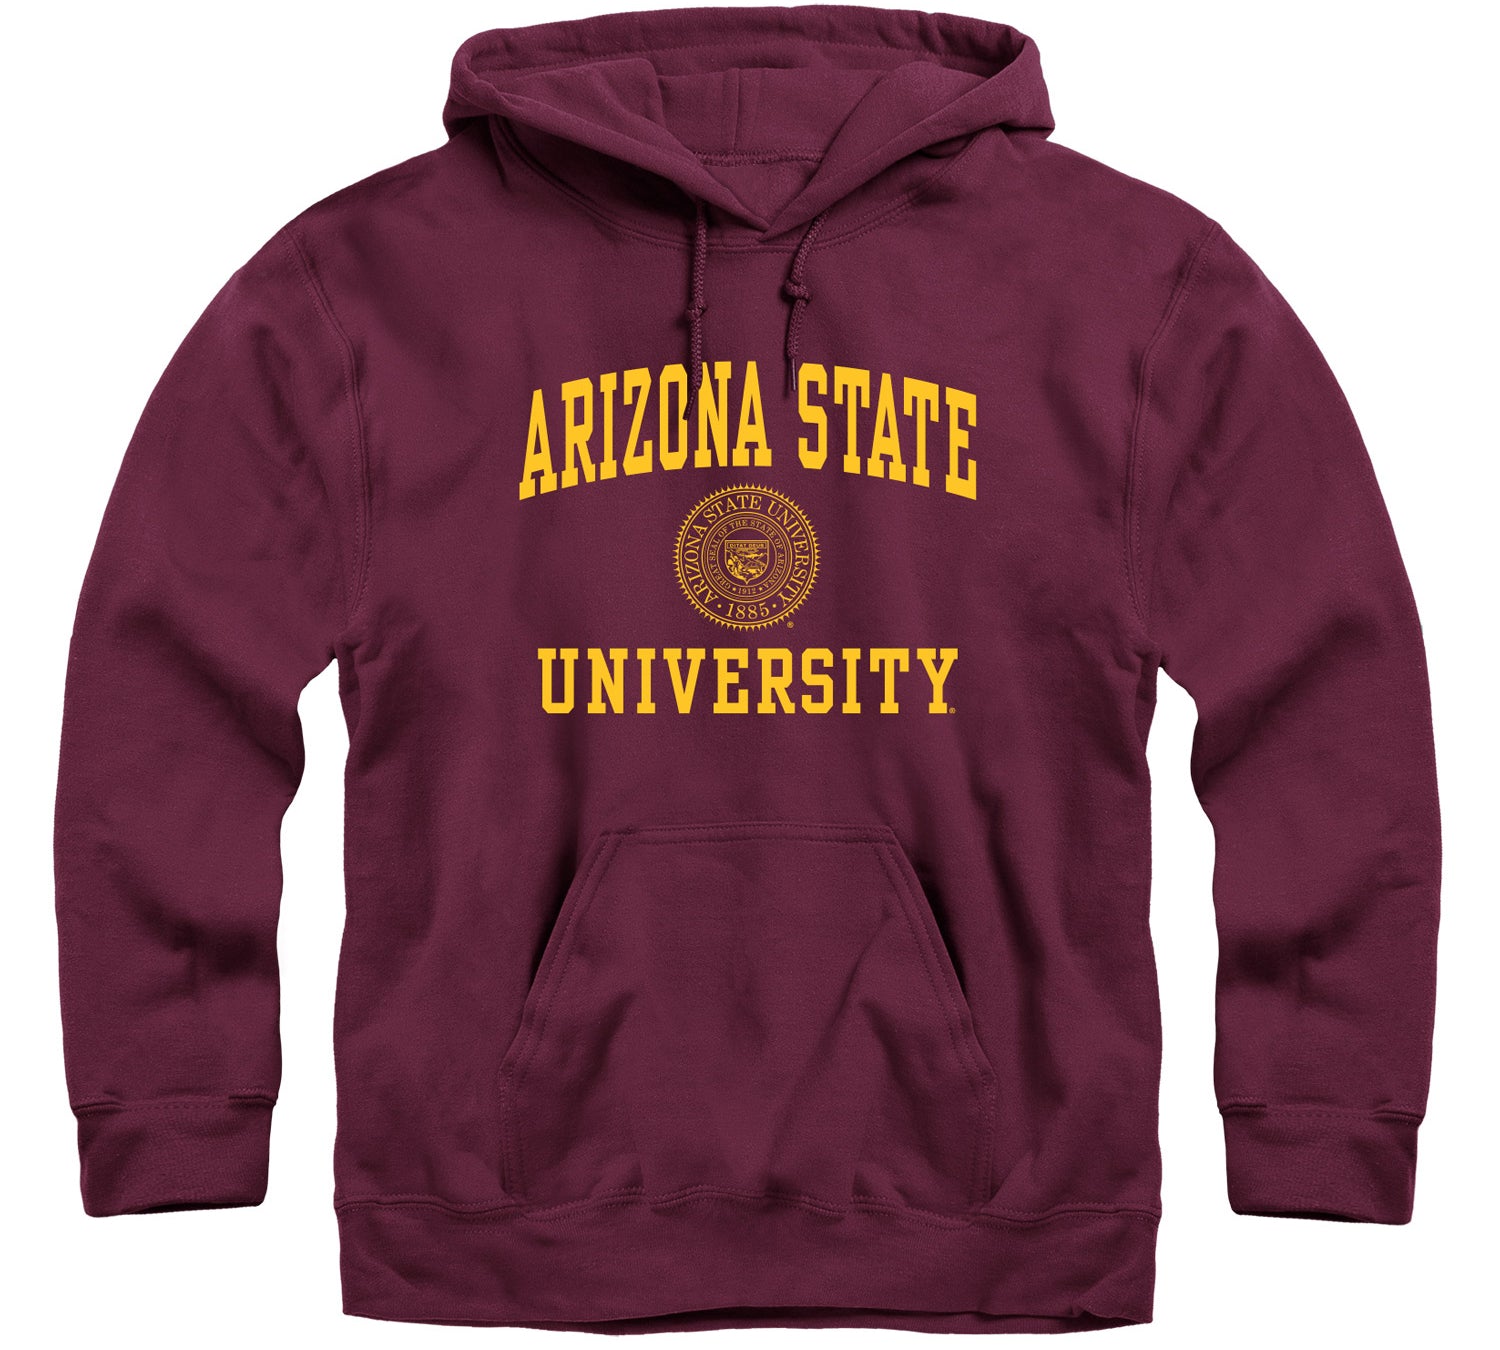 Arizona State University Hoodie for sale unisex Teesstar,com